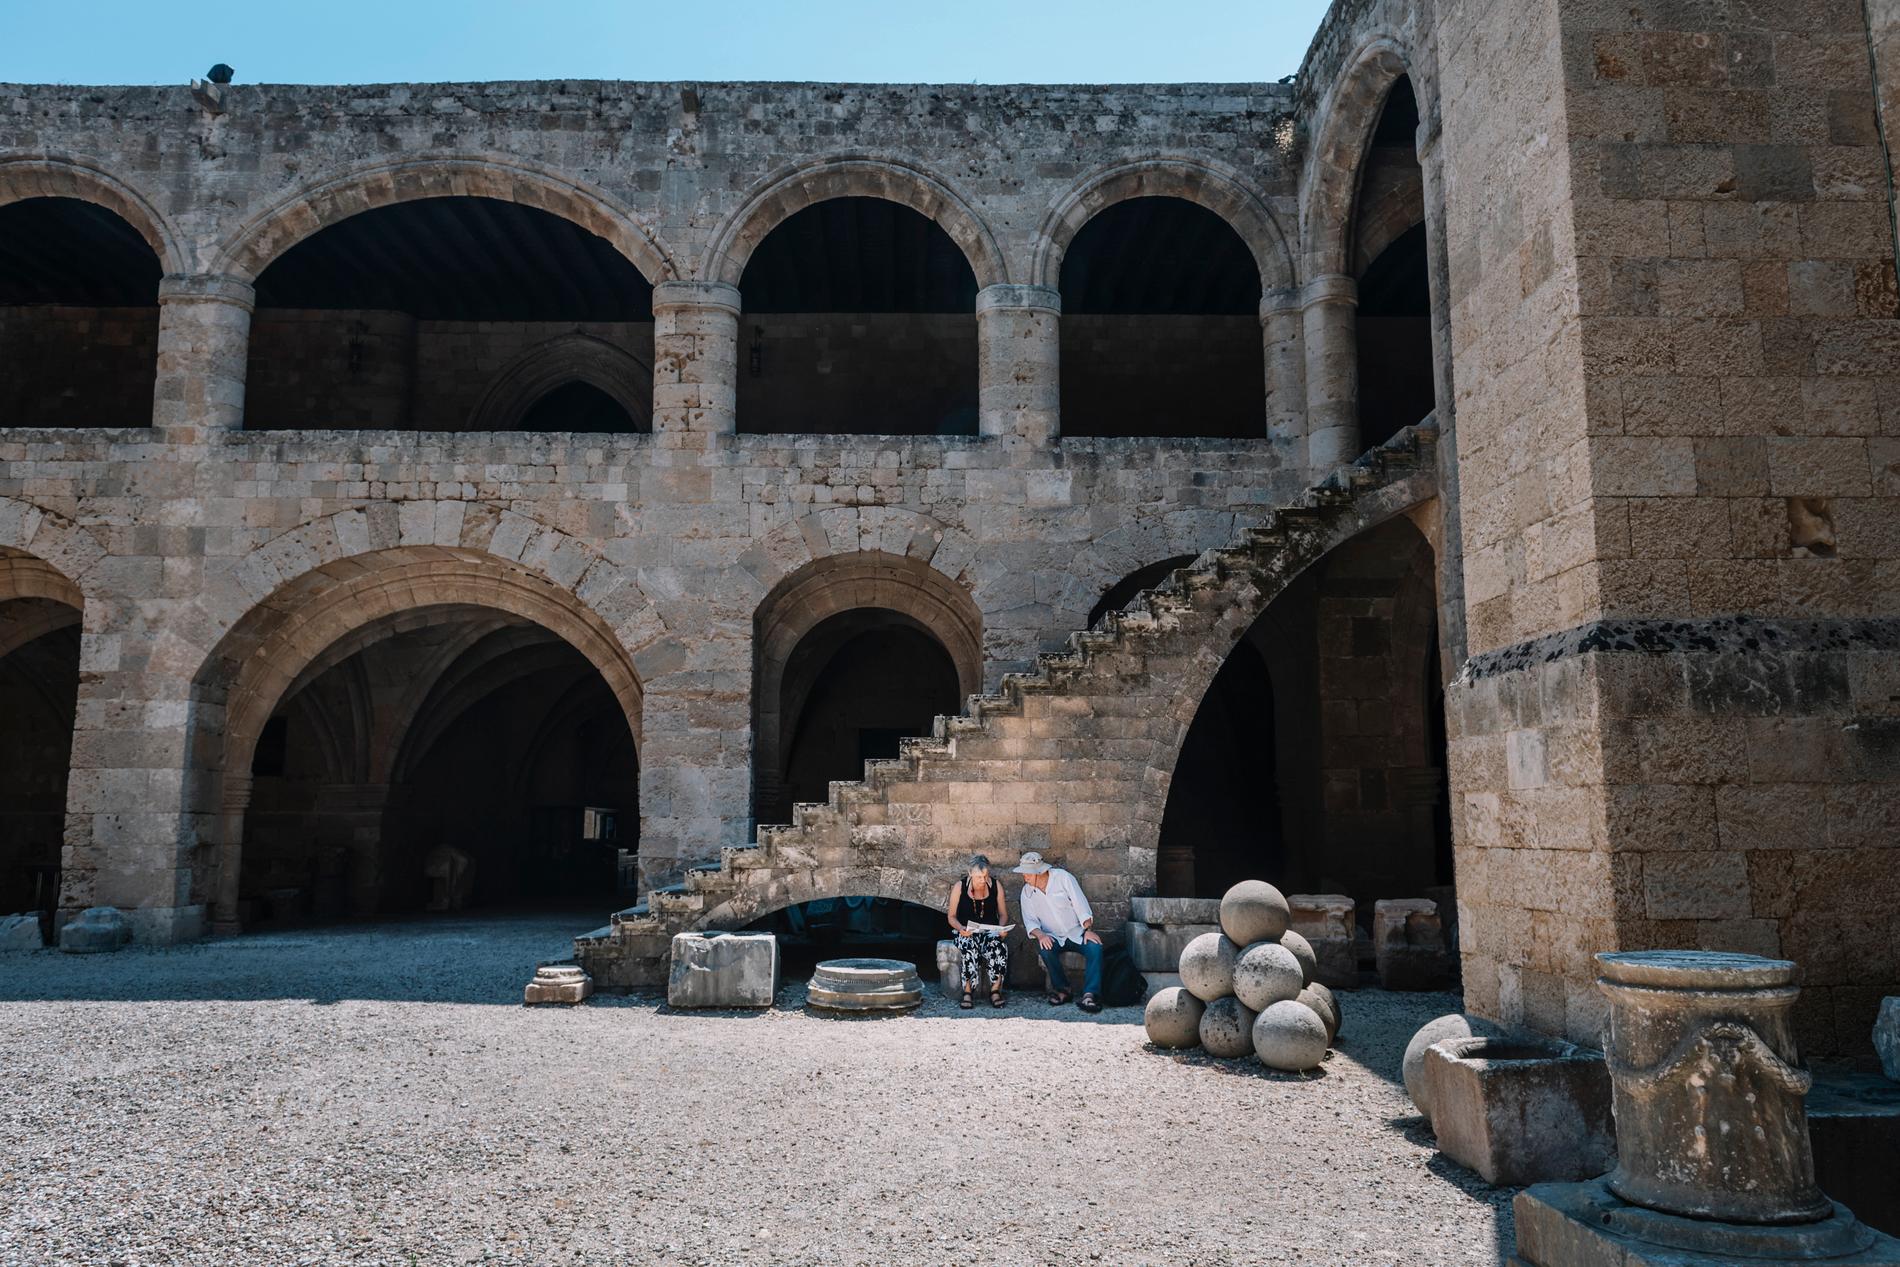 Arkeologiska museet i Rhodos stad har haft öppet sedan mitten av juni. Men de två första veckorna kom främst grekiska besökare. De senaste dagarna har de utländska turisterna börjat komma, men bara 10-15 om dagen.